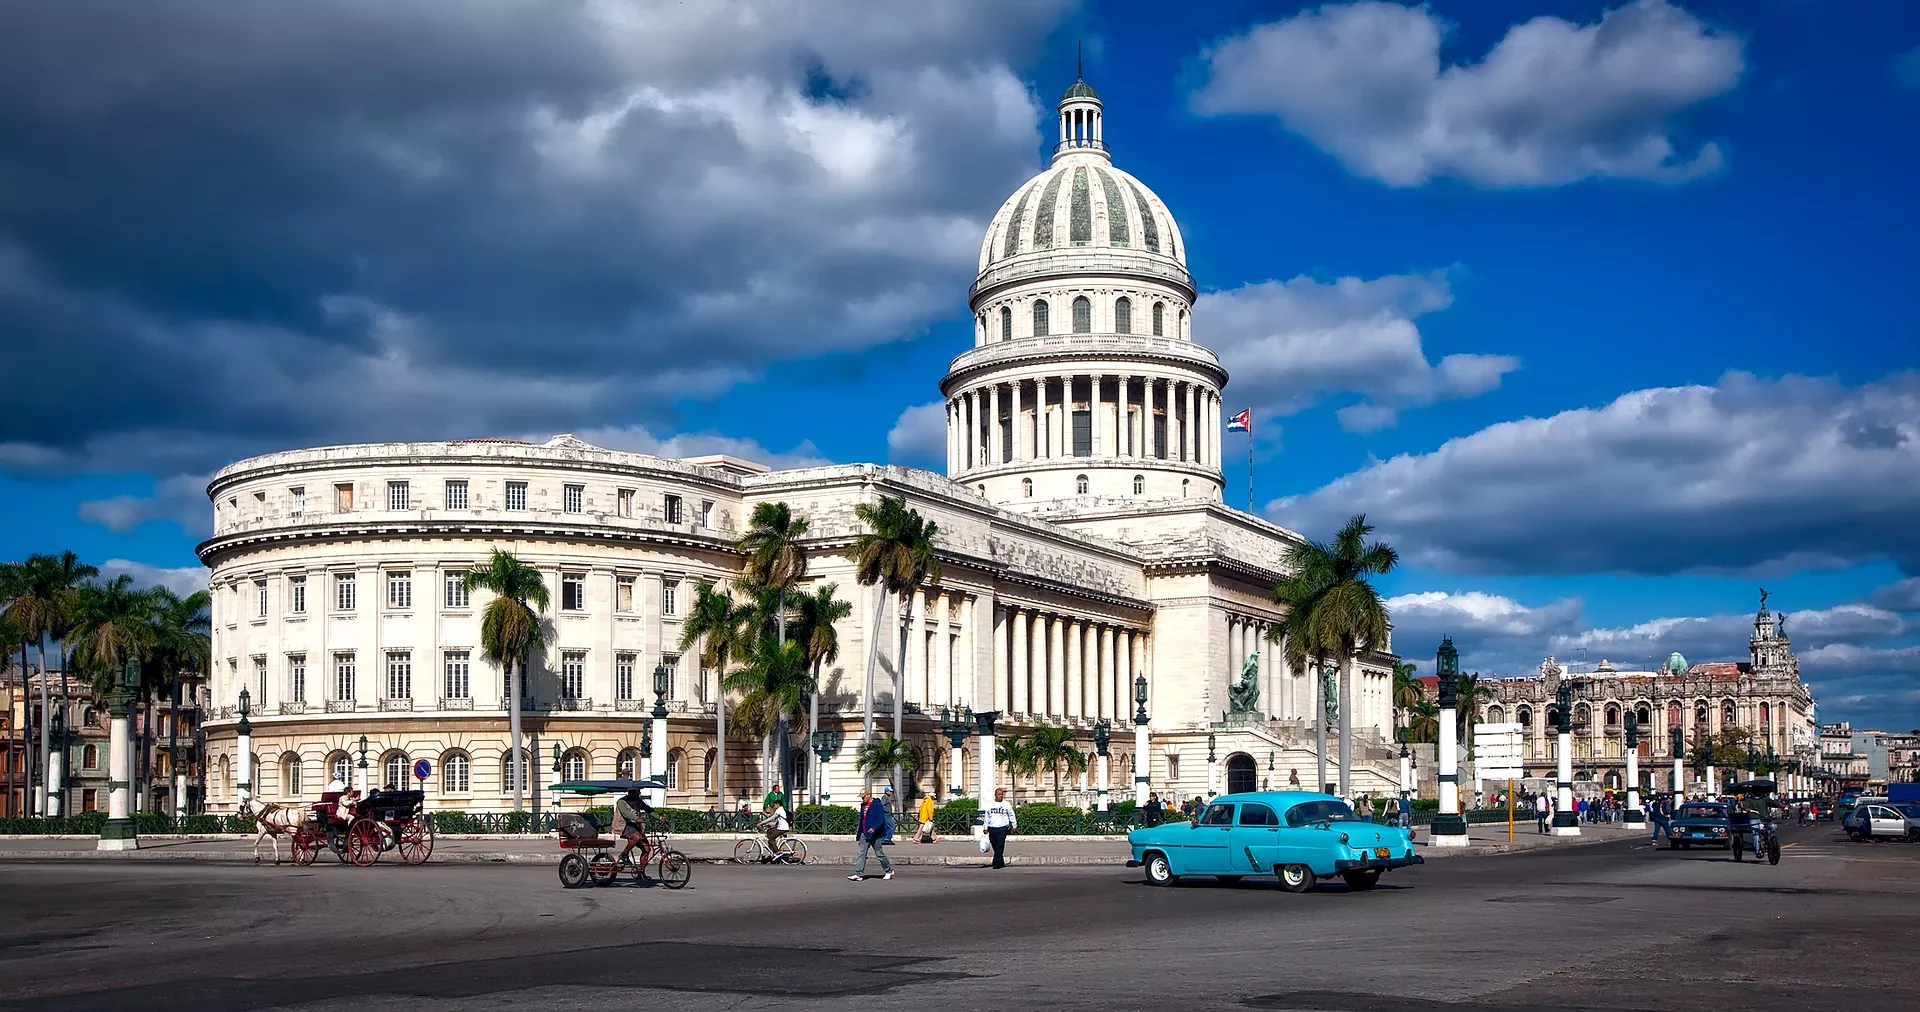 Main image of article: Cuba et la Havane.